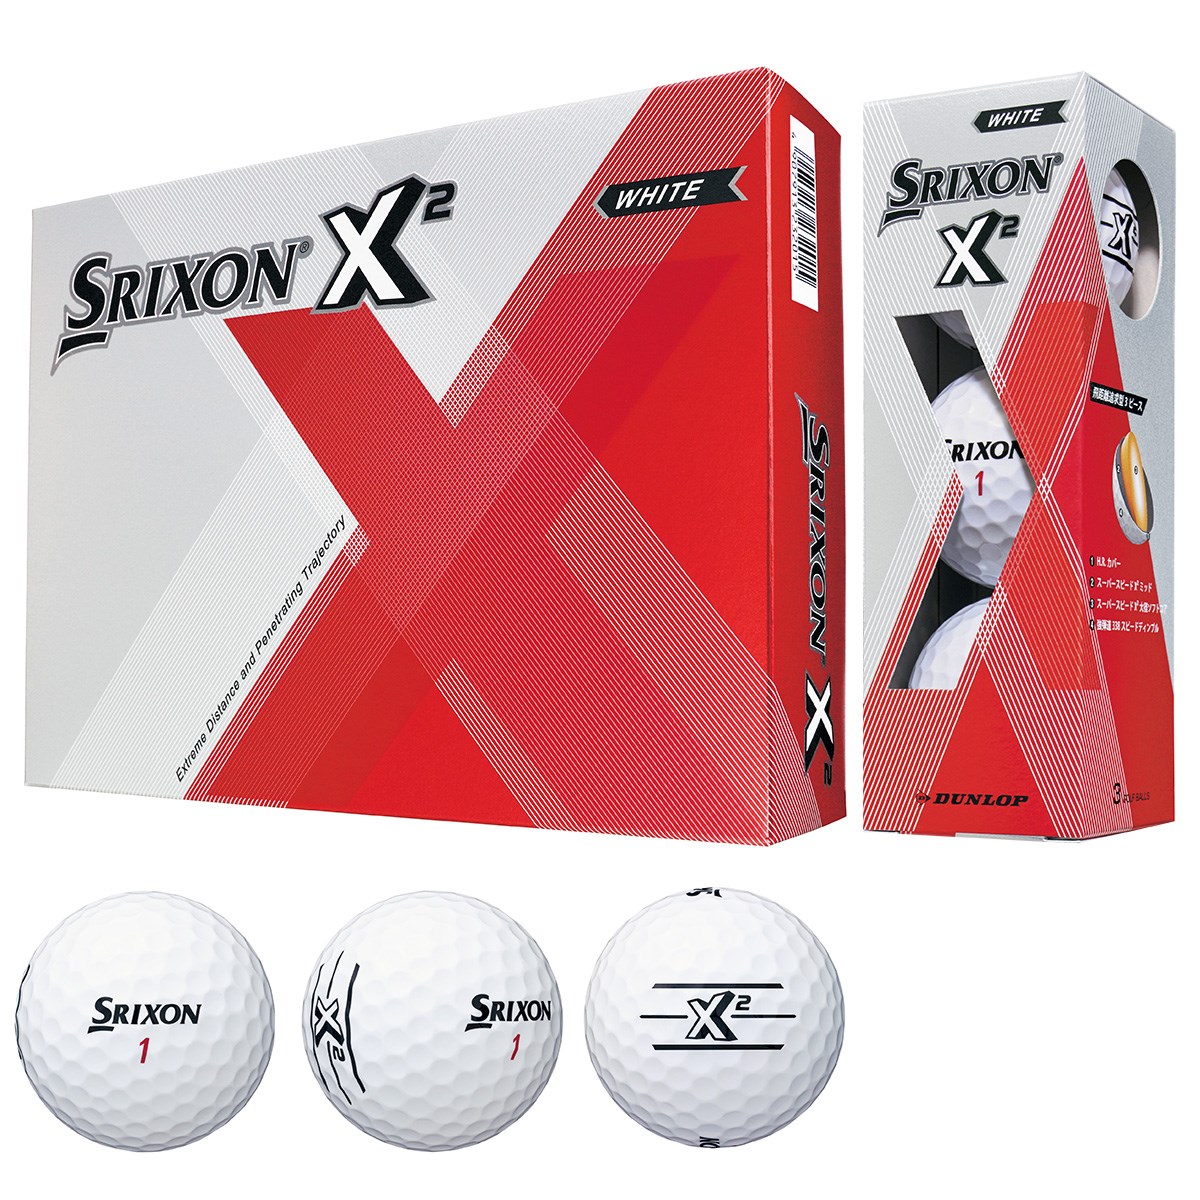 スリクソン X2 ボール ダンロップ Srixon 通販 Gdoゴルフショップ